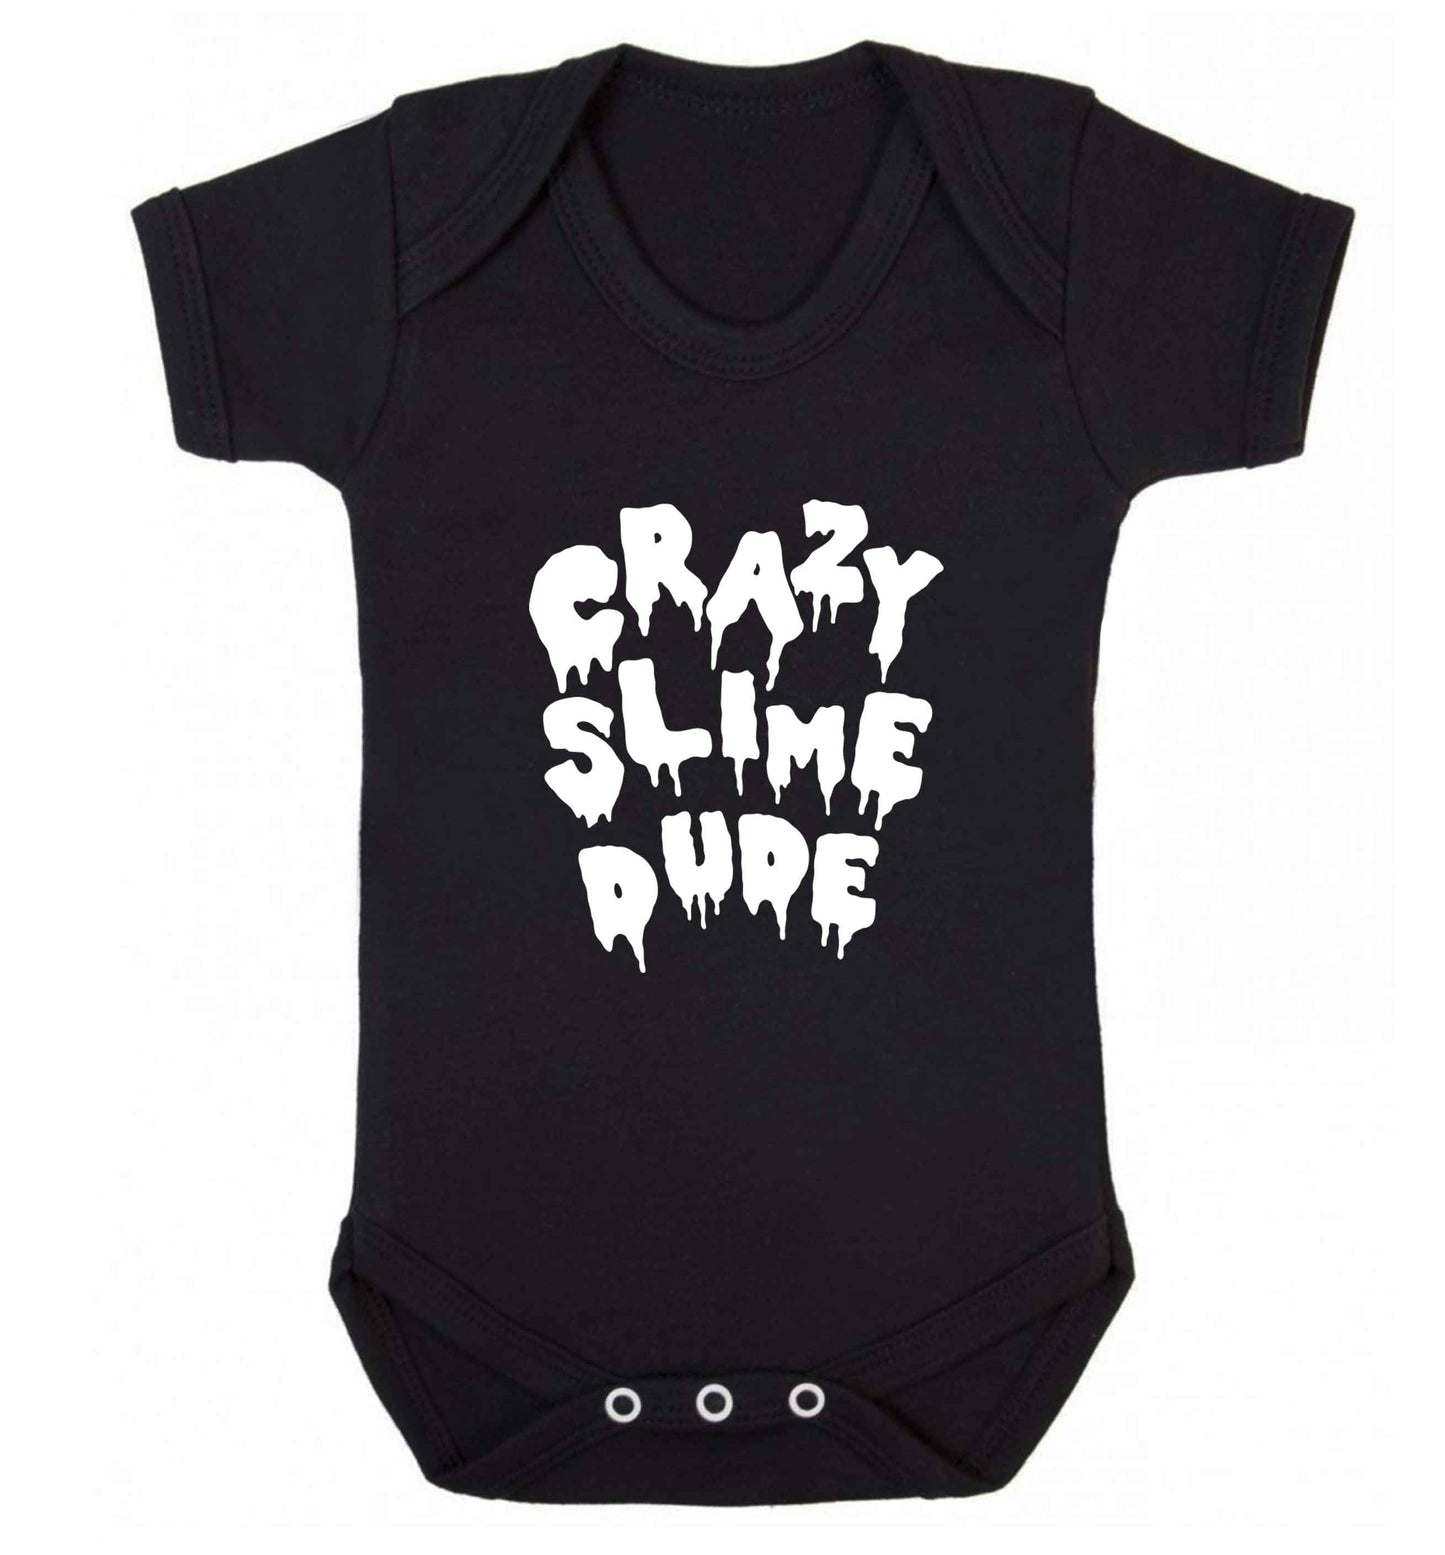 Crazy slime dude baby vest black 18-24 months